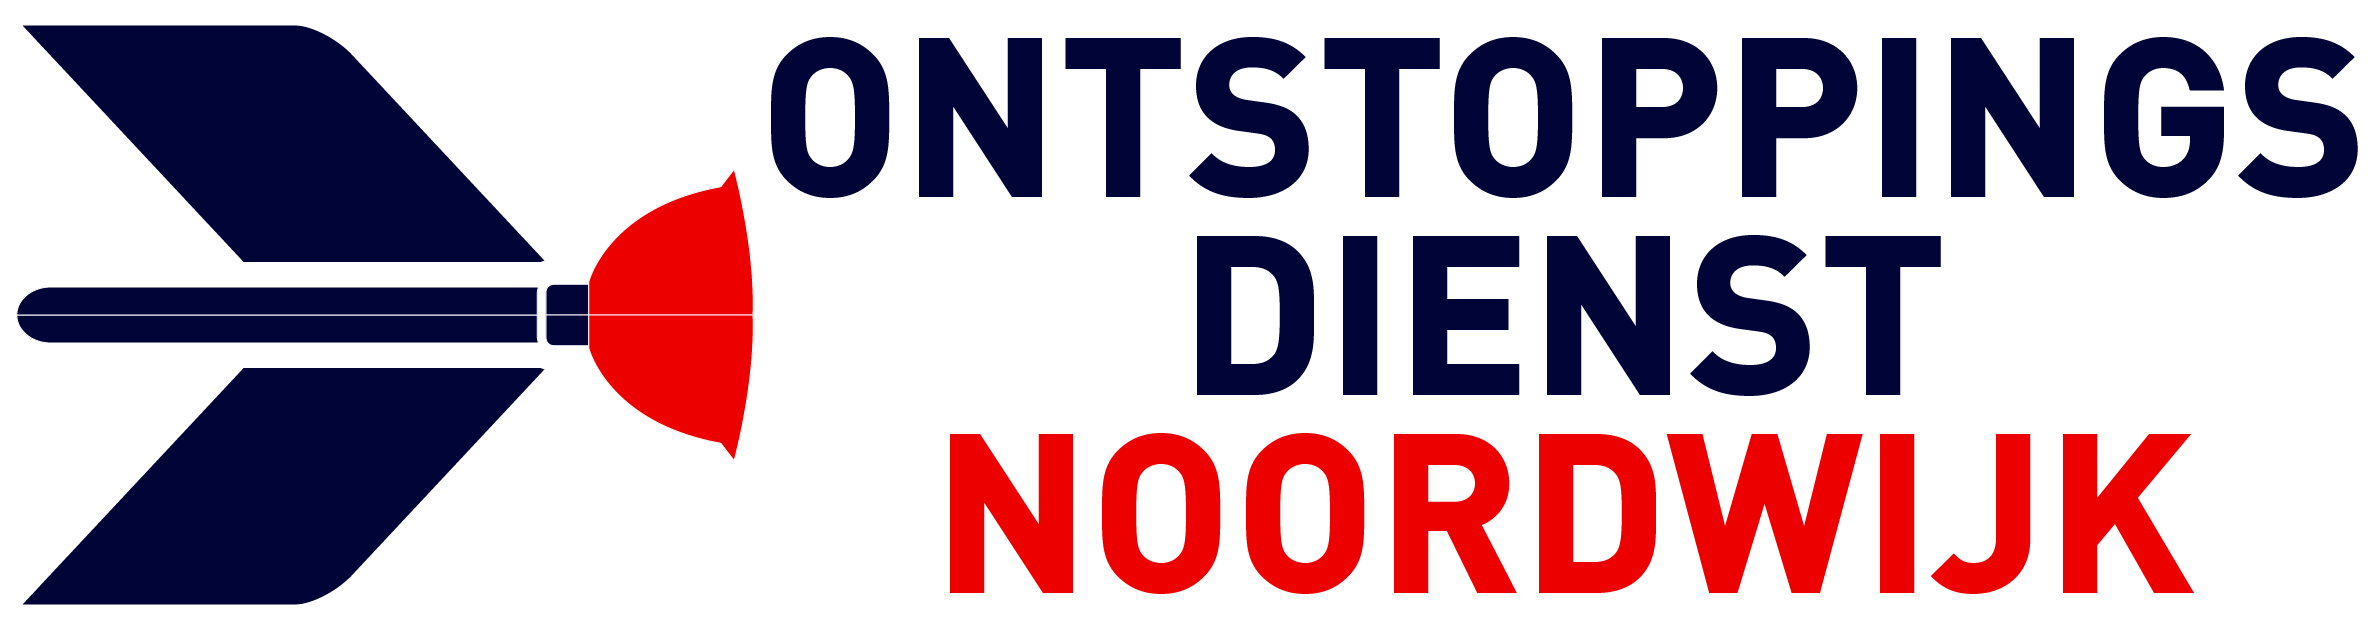 Ontstoppingsdienst Noordwijk logo